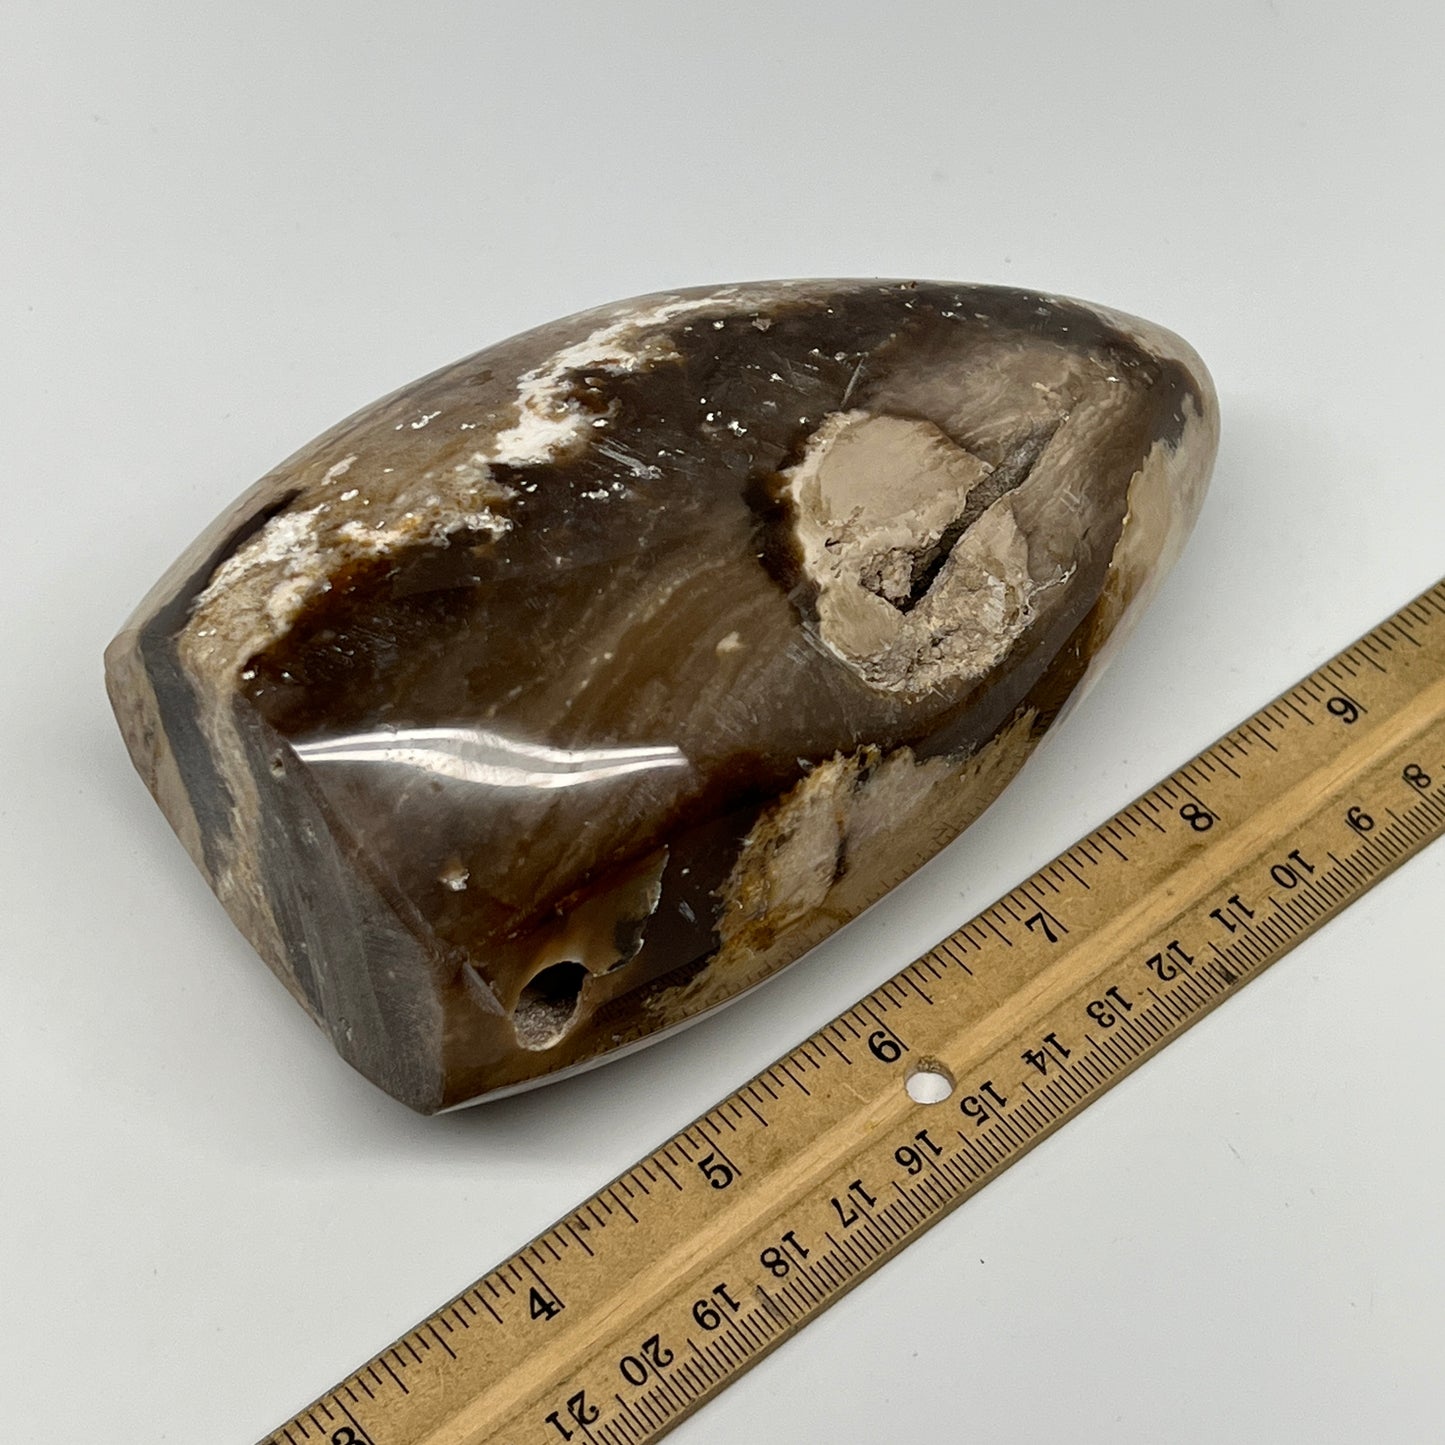 890g,5.4"x3.3"x2.4" Black Opal Freeform Polished Gemstone @Madagascar,B21050